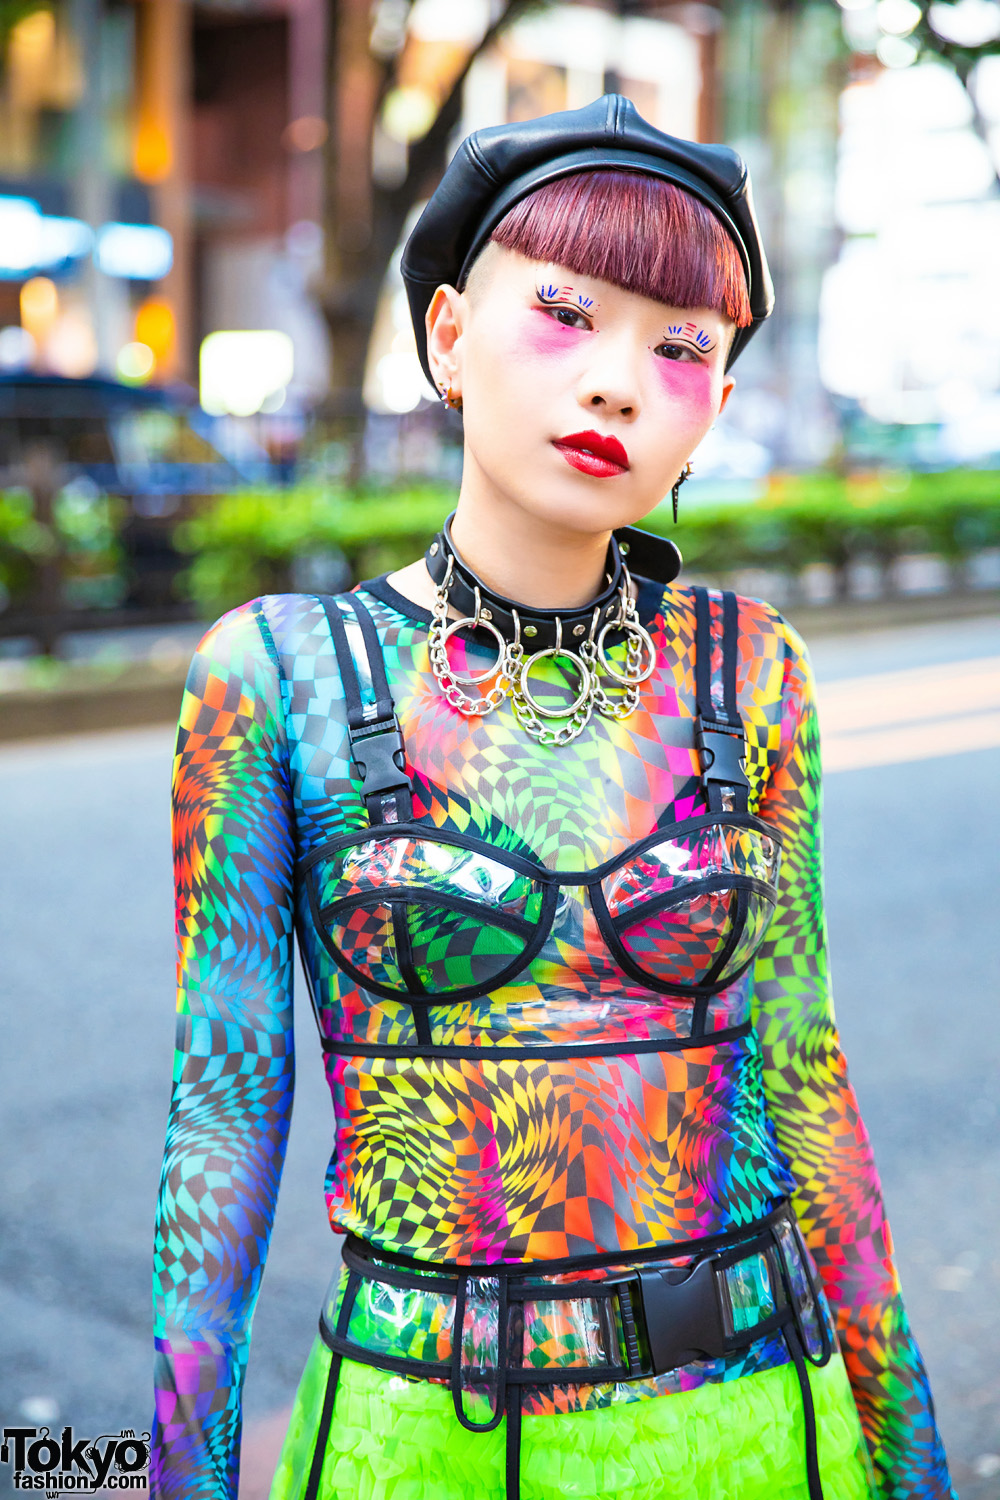 Japanese Nailist in Harajuku w/ Mixed Prints & Rainbow Platforms 